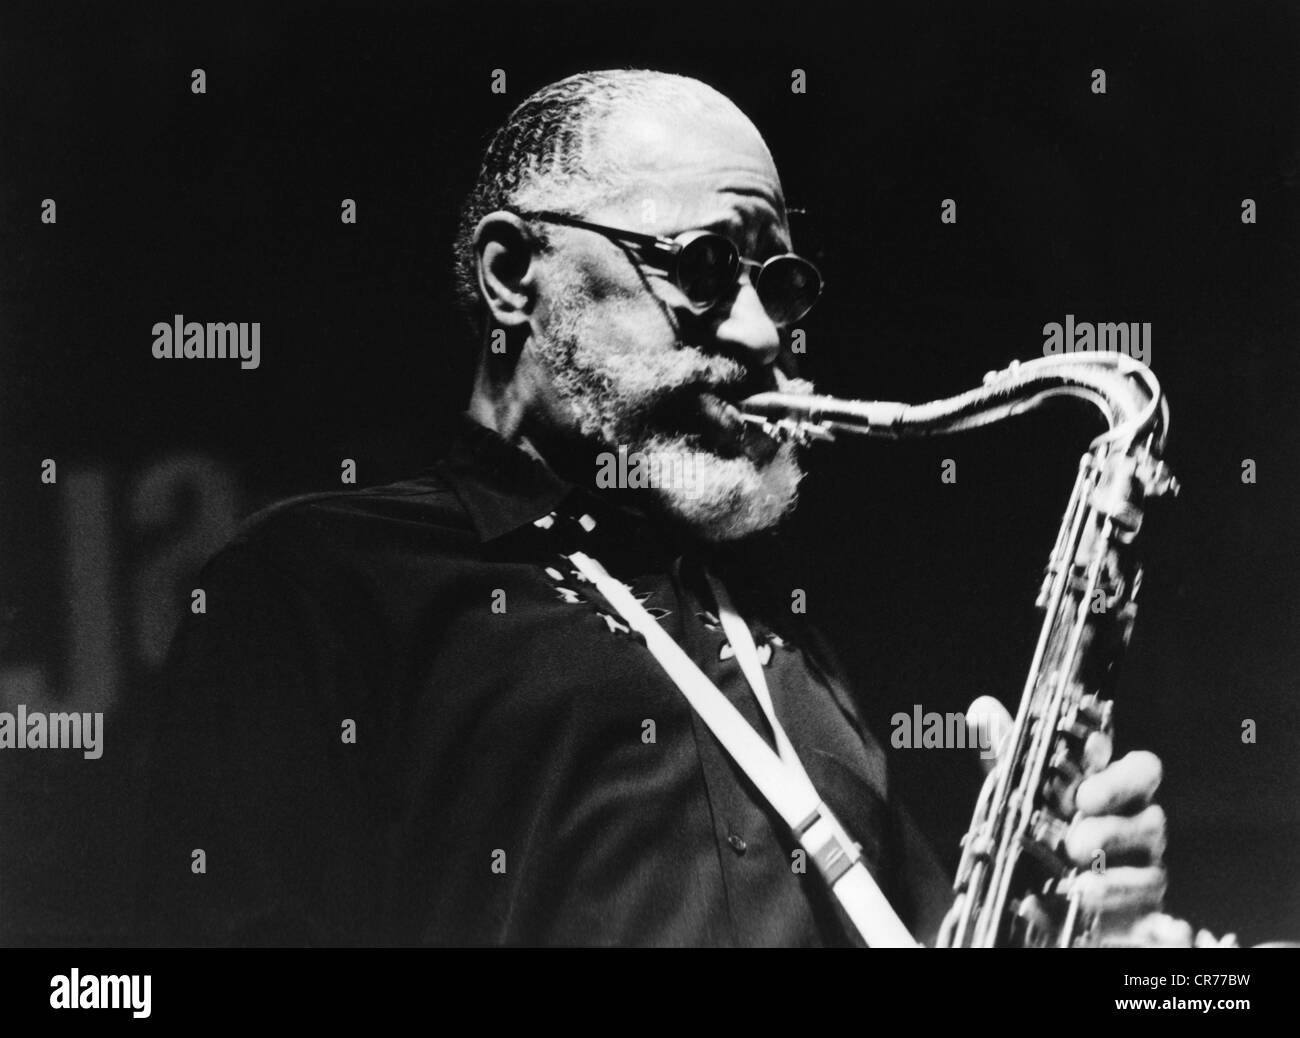 Rollins, Sonny, * 7.9.1930, US-amerikanischer Musiker/Künstler (Jazz), Geburtsname: Theodore Wal, halbe Länge, bei Bühnenauftritt mit Saxofon, Stuttgart, Mai 2001, Stockfoto